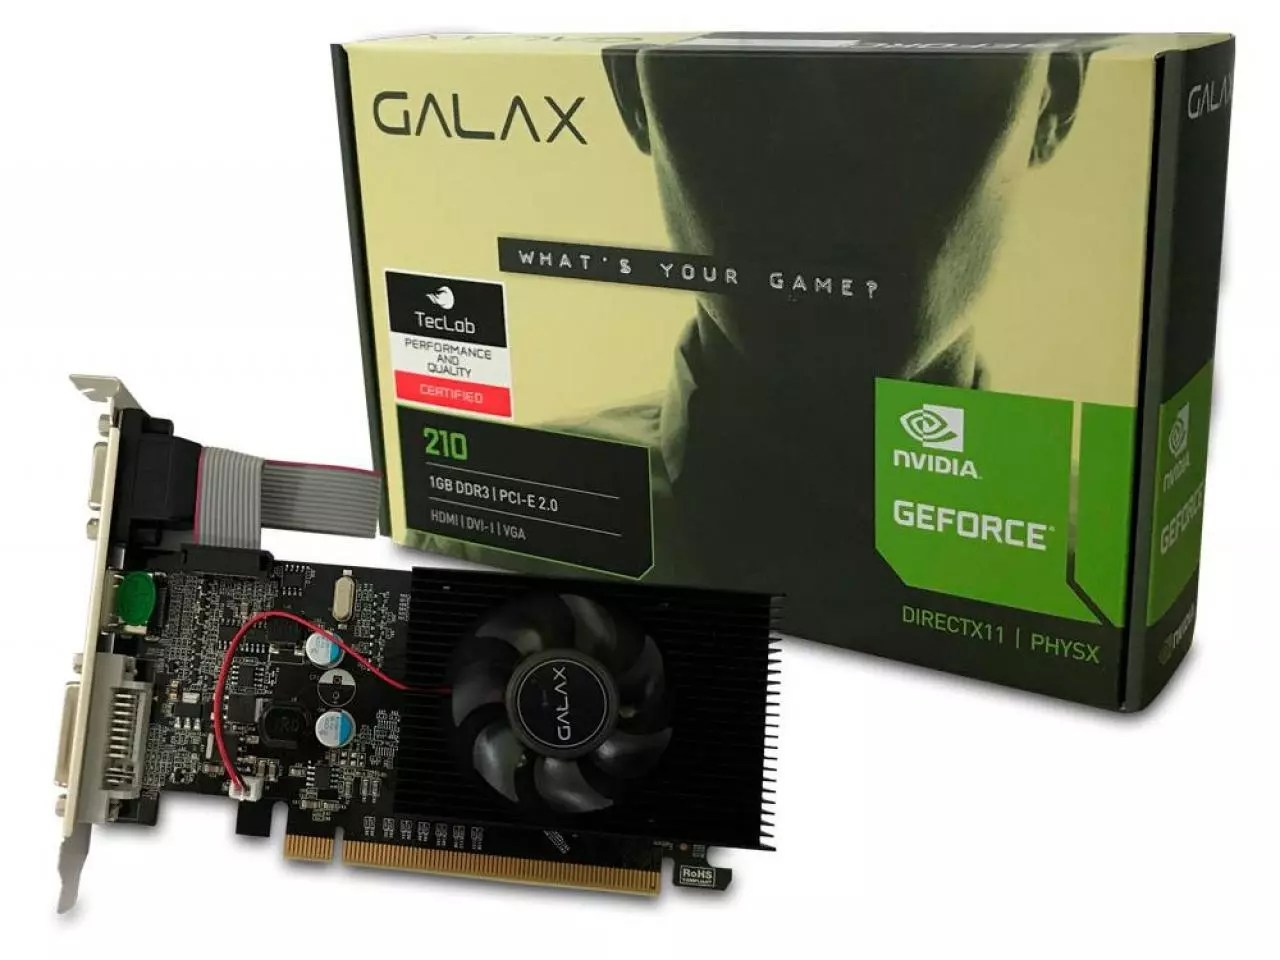 Placa De Vídeo Galax Geforce Gt 730 4gb Ddr3 64bits